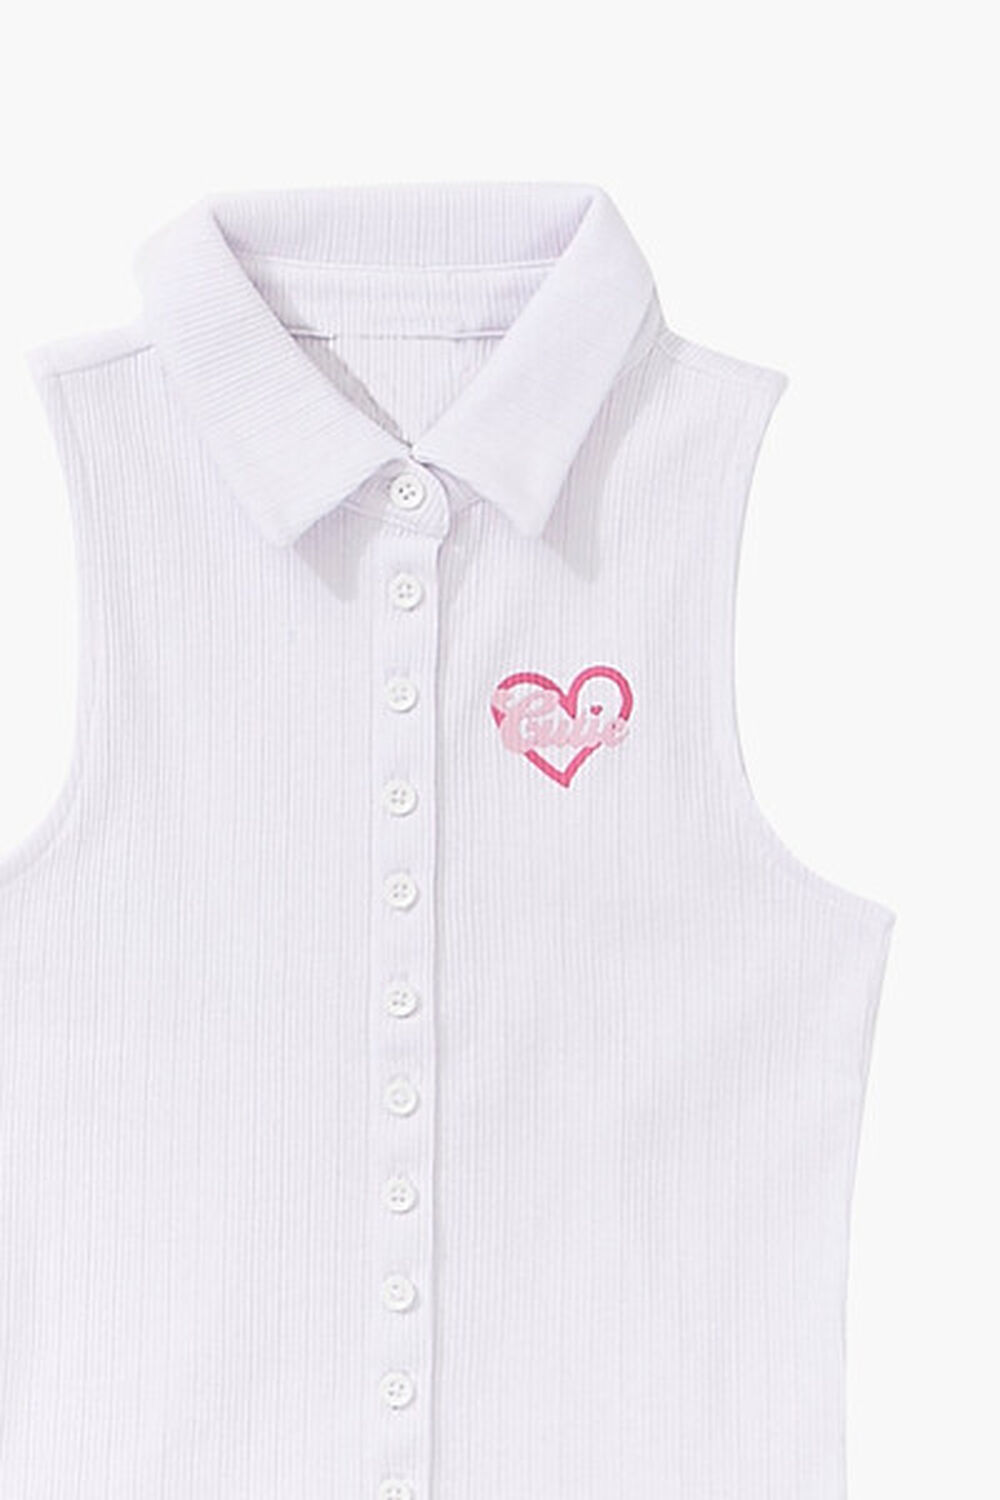 WHITE/MULTI Girls Cutie Sleeveless Shirt (Kids), image 3